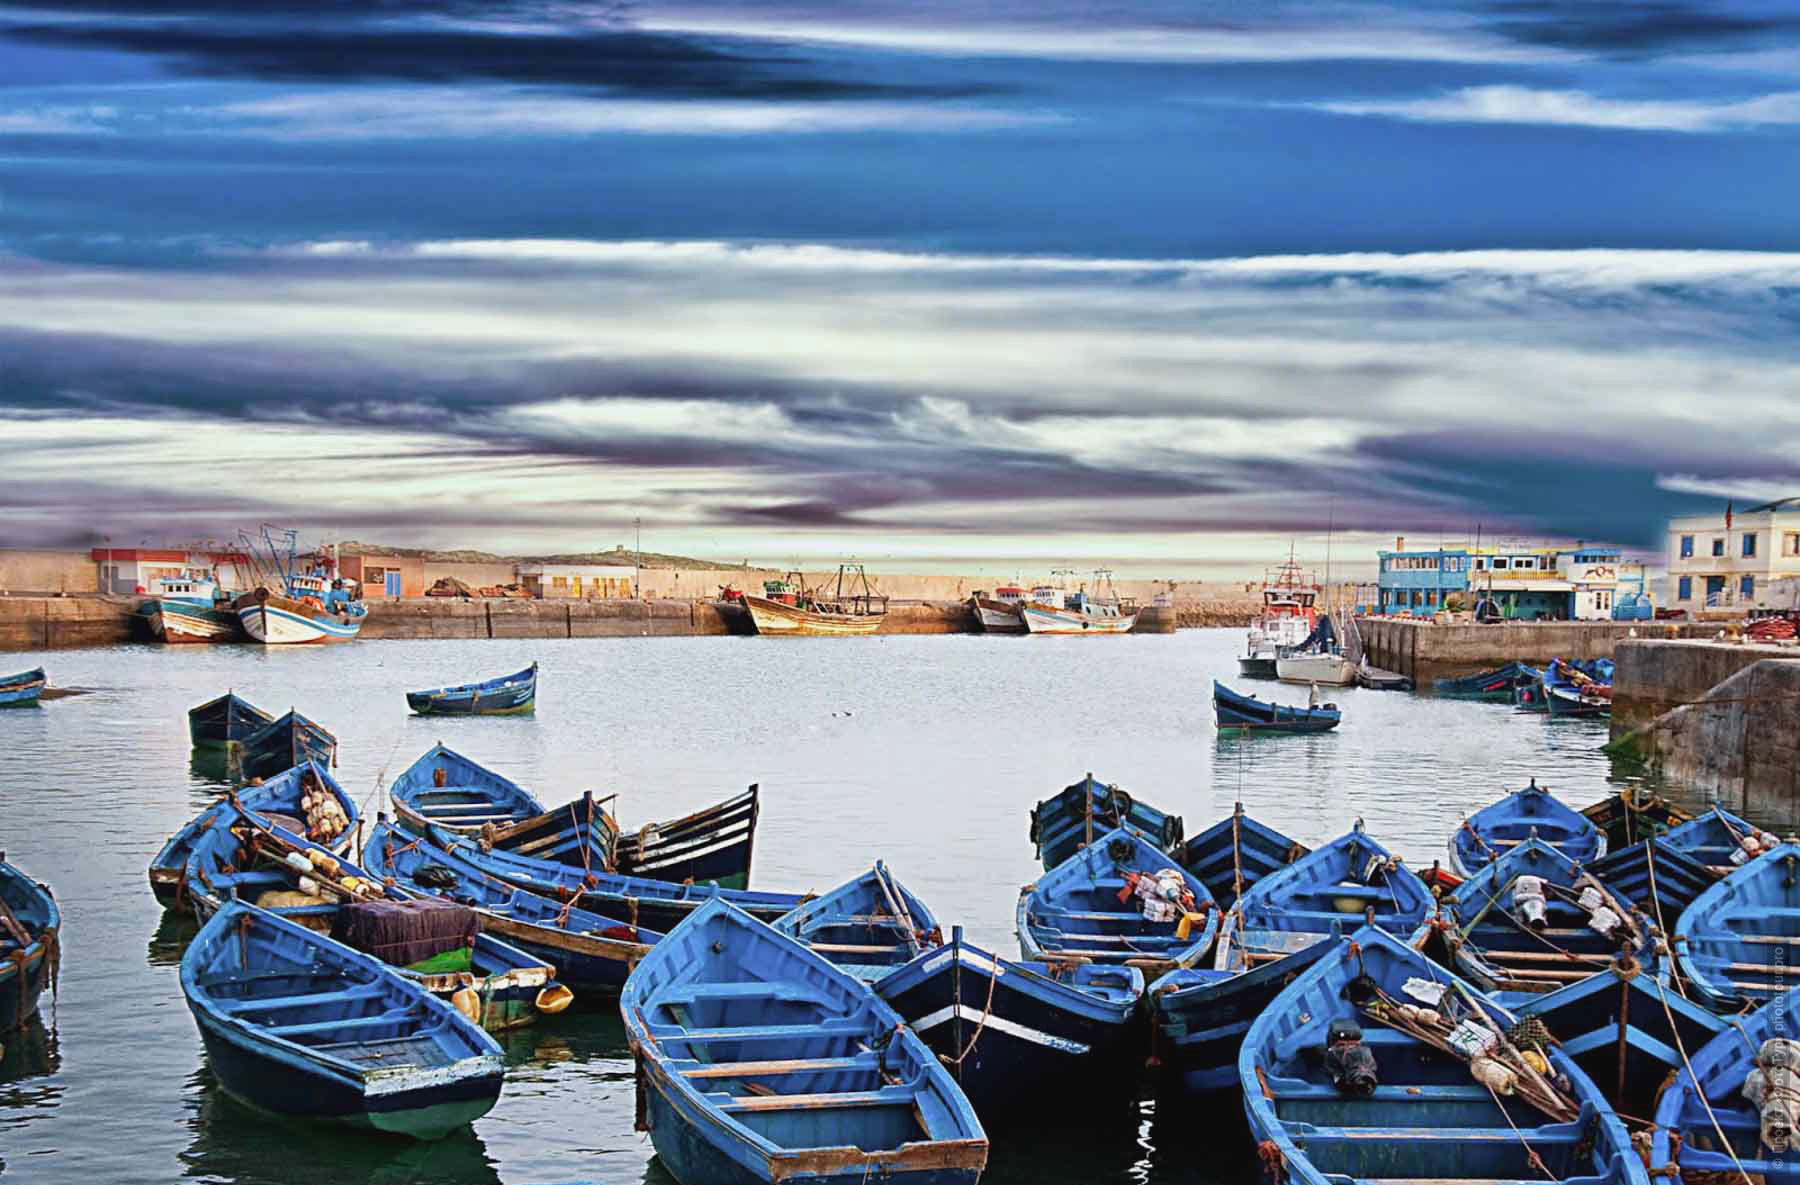 Порт Эс-Сувейра. Фототур в Марокко: медины и порты Марокко, 7 ноября - 18 ноября 2021 года.